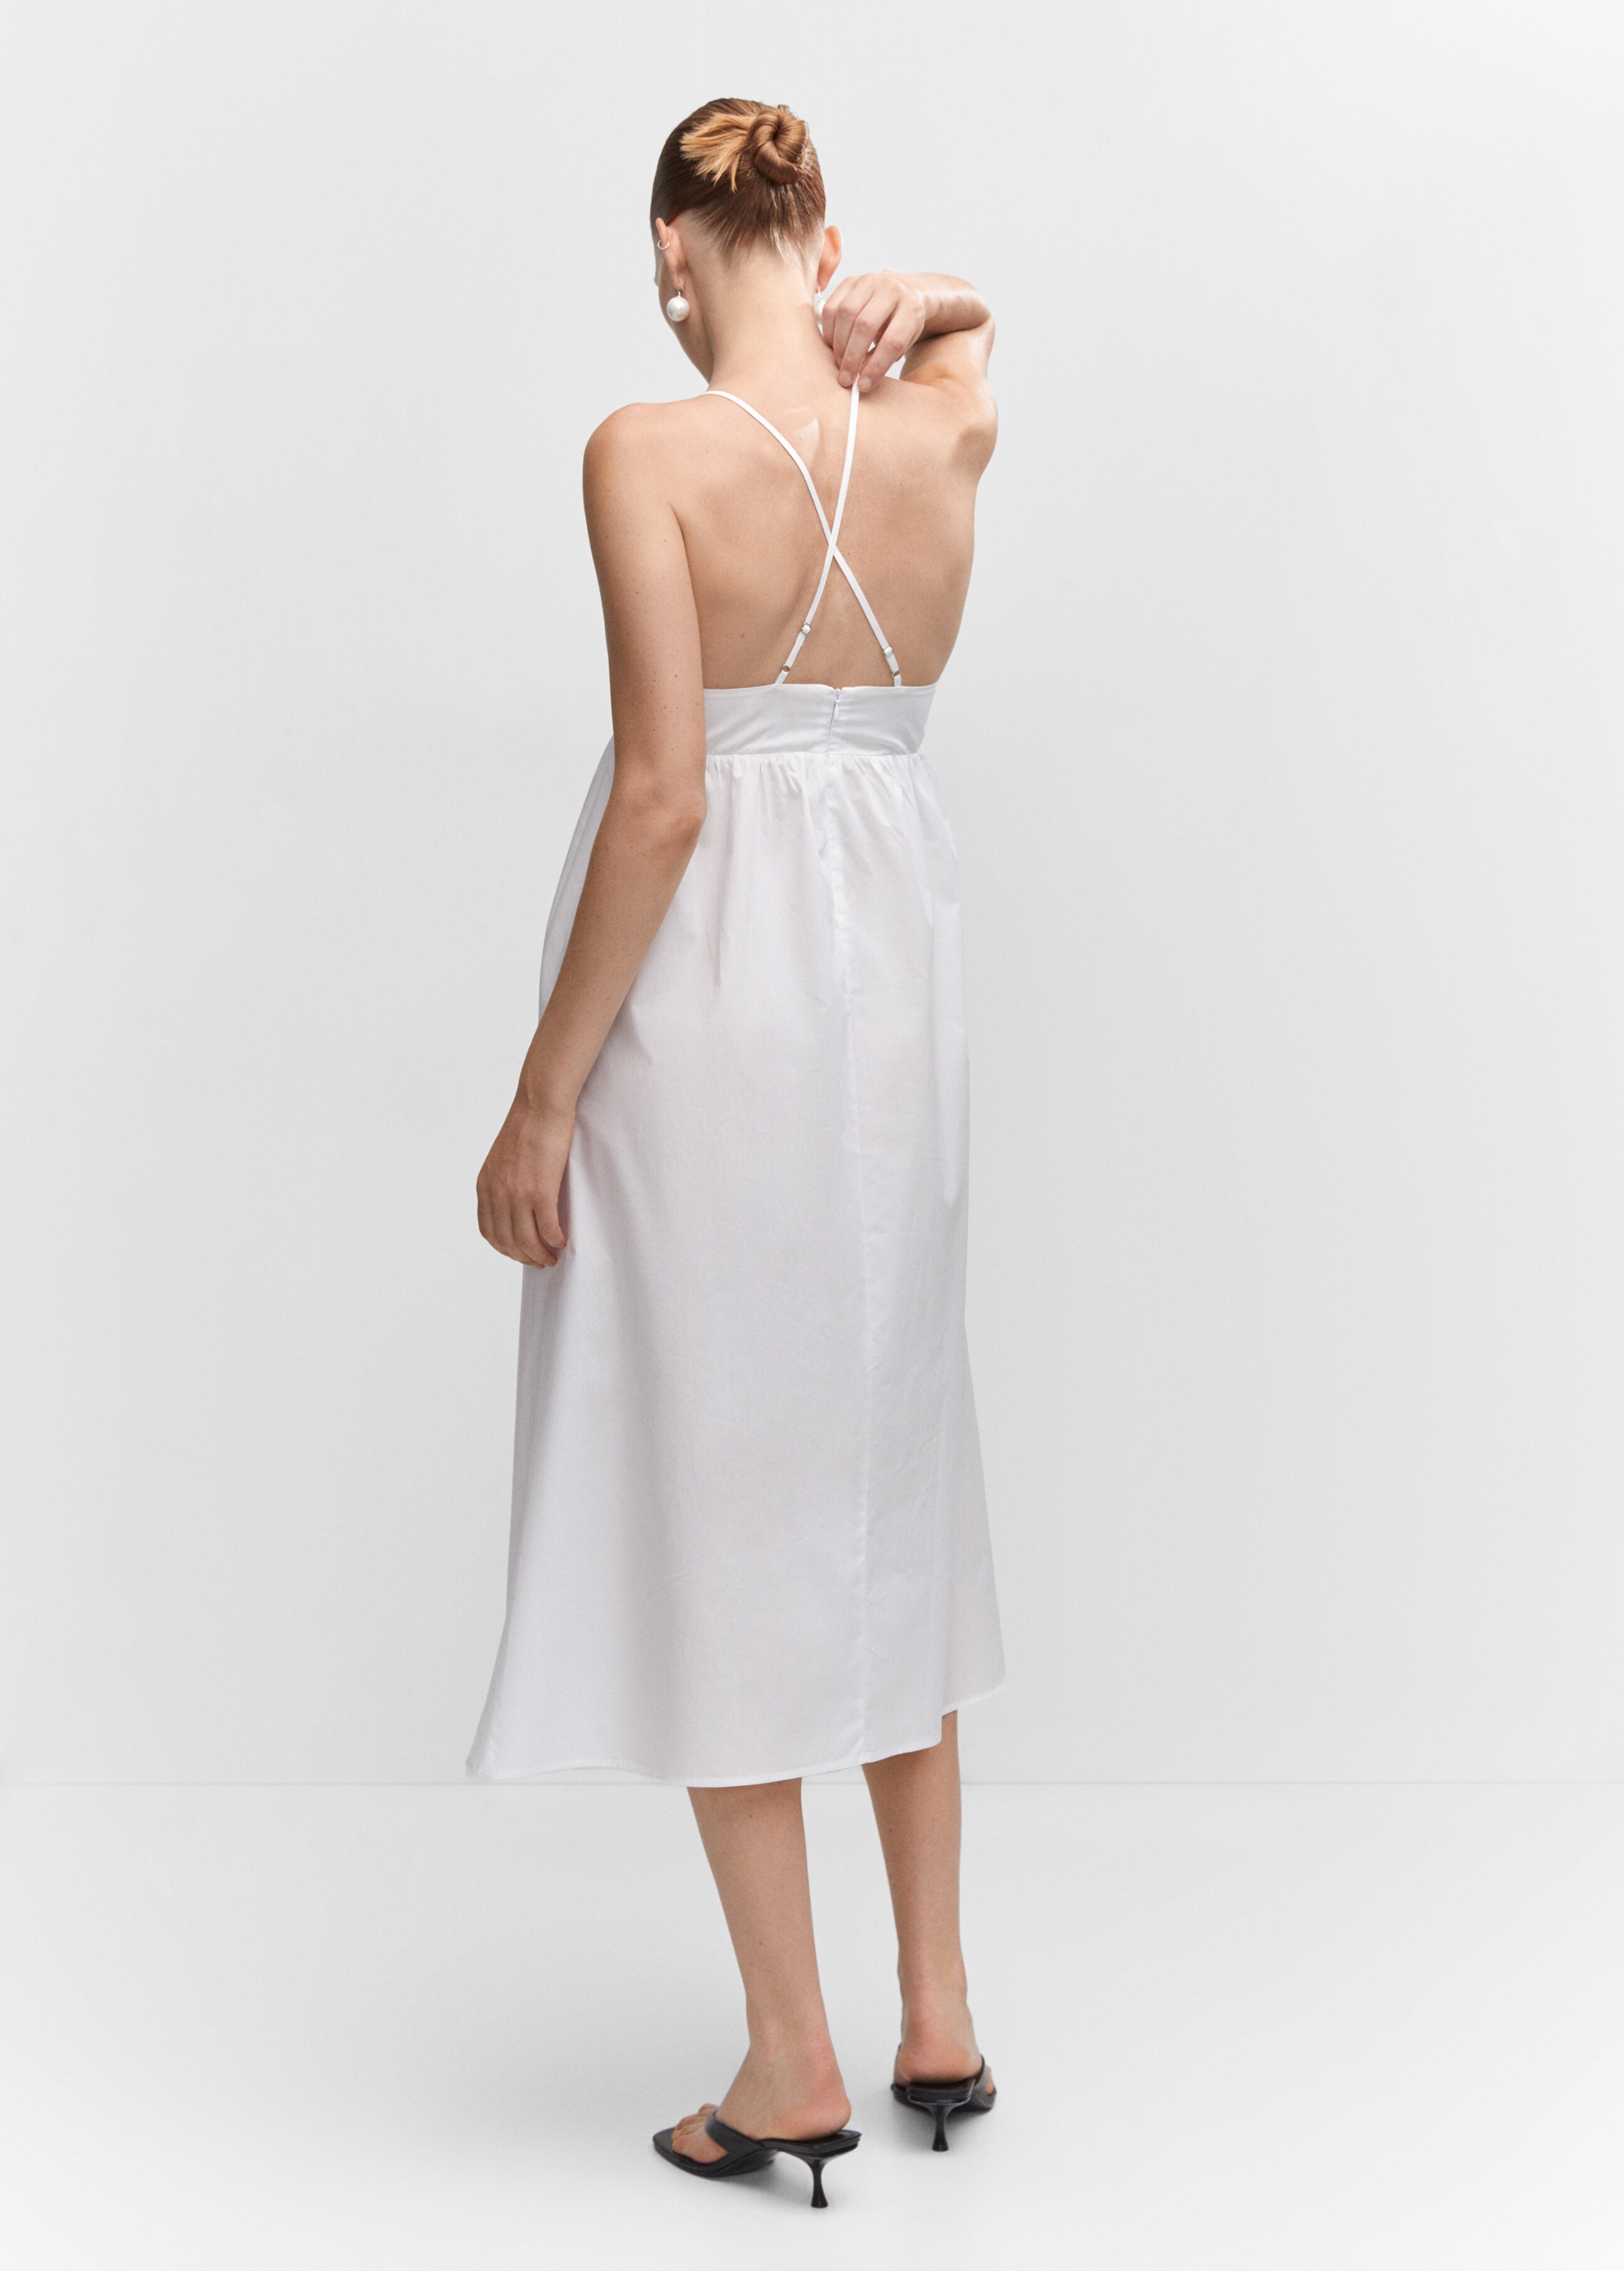 Φόρεμα βαμβάκι χιαστί πλάτη - Πίσω όψη προϊόντος